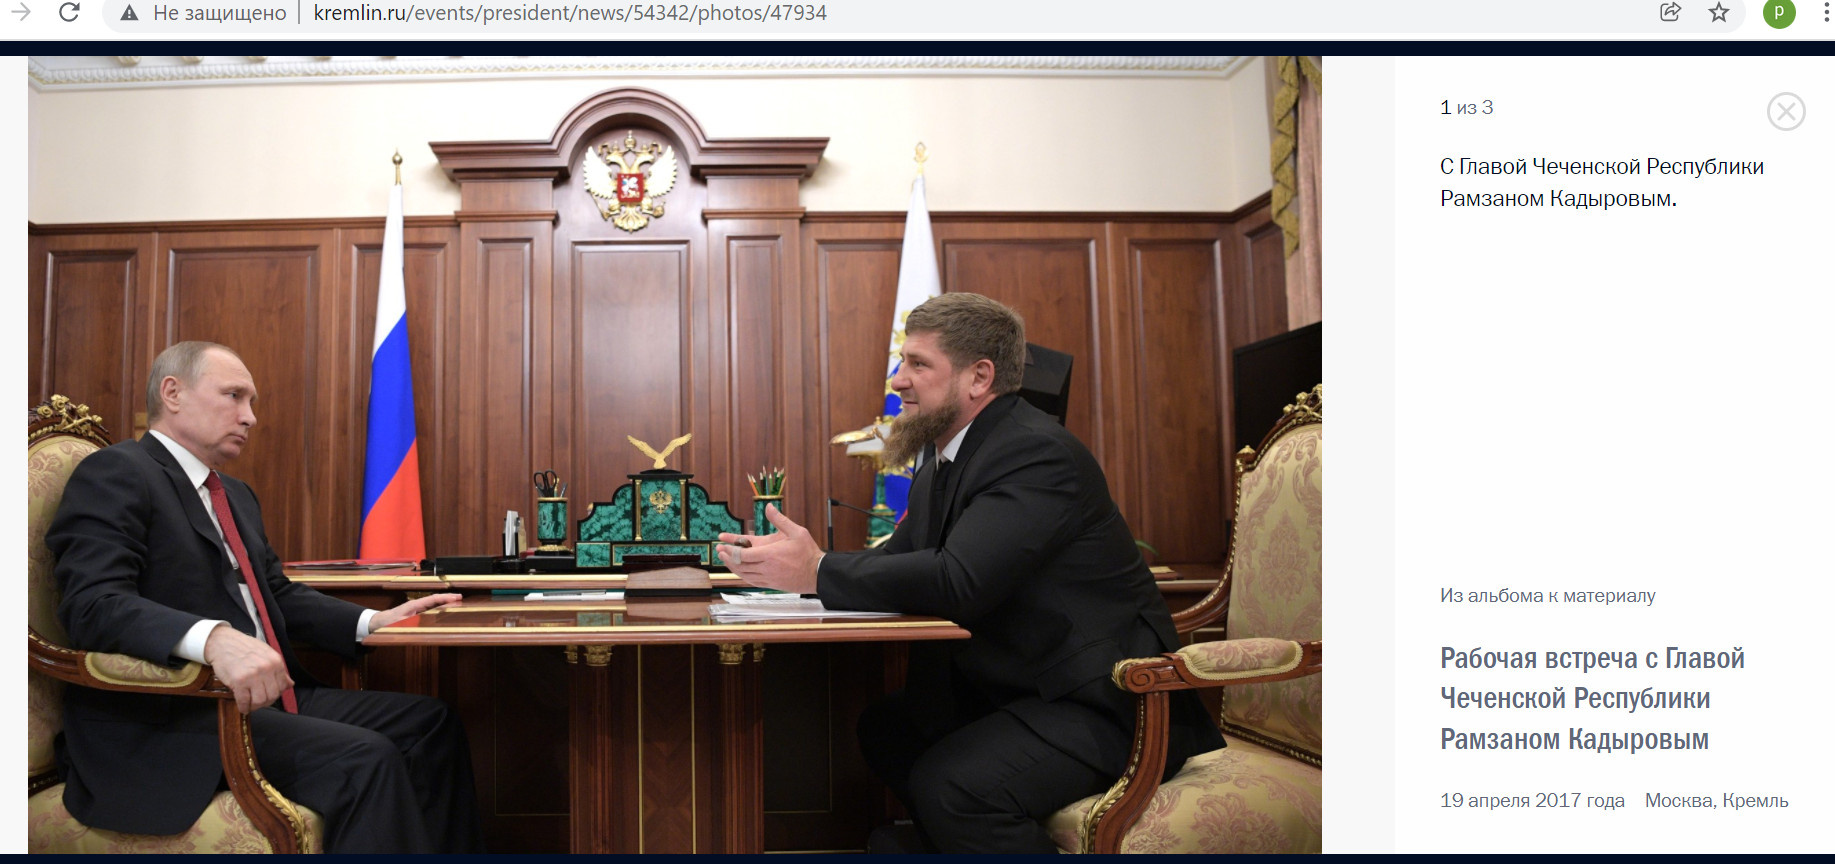 Скриншот с сайта www.kremlin.ru